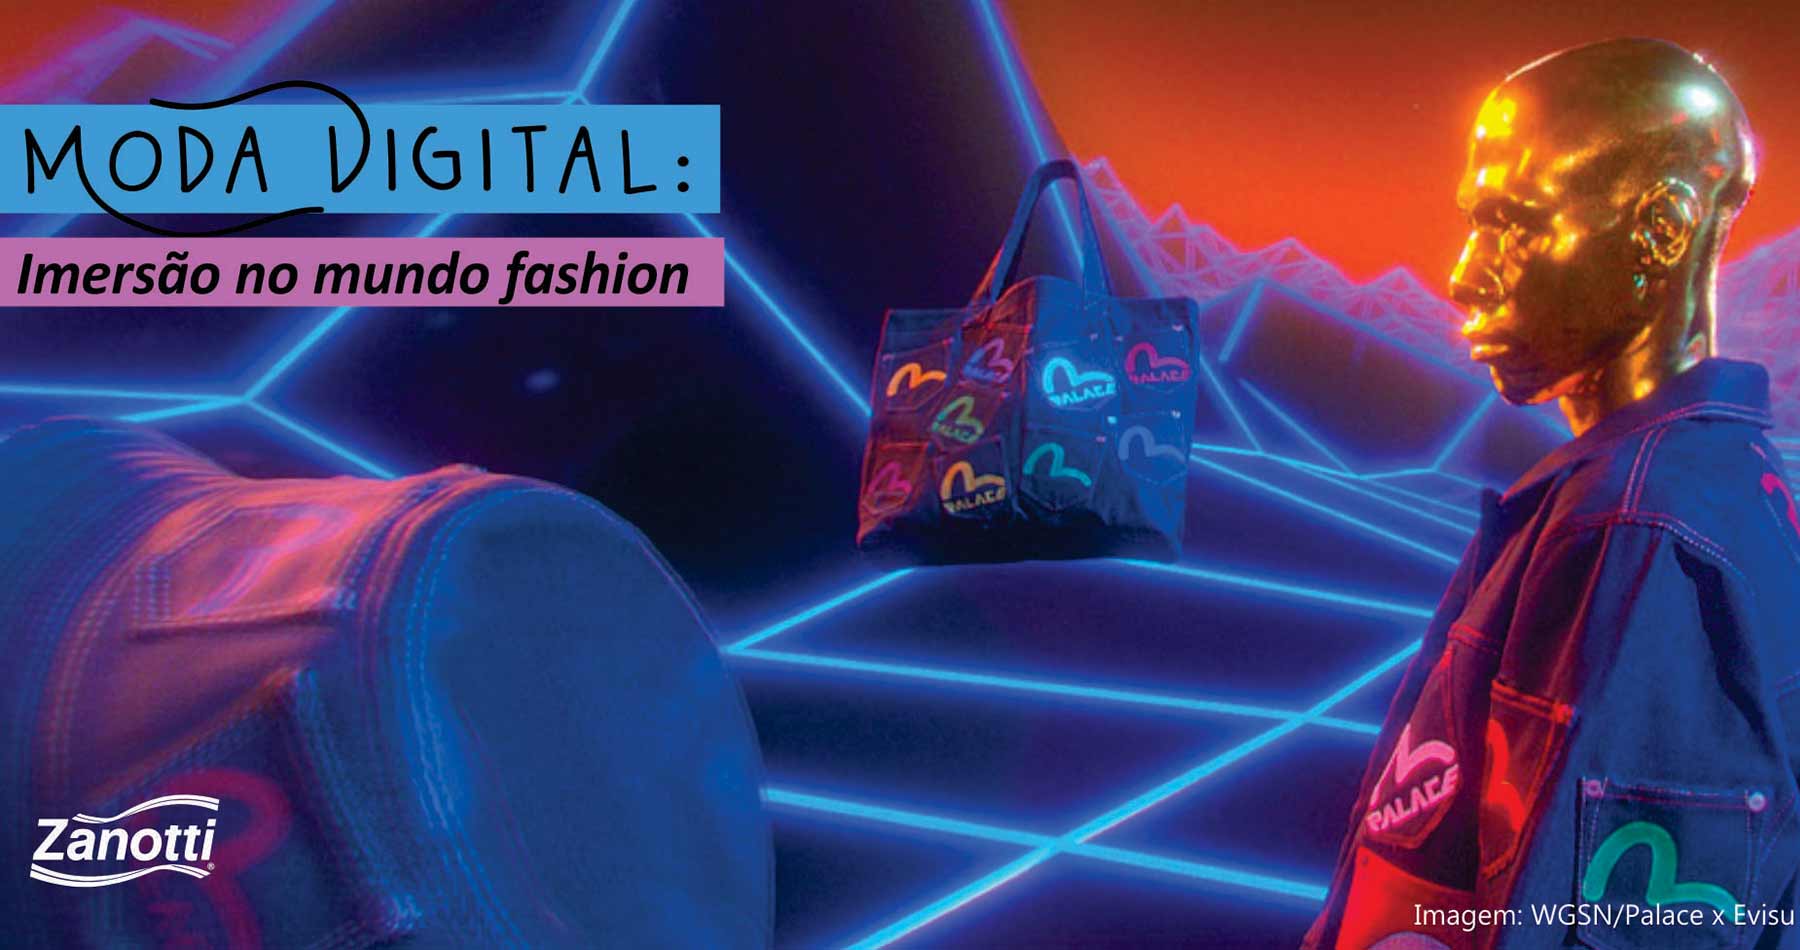 imagem que usa elementos digitais com o texto moda digital imersão no mundo fashion